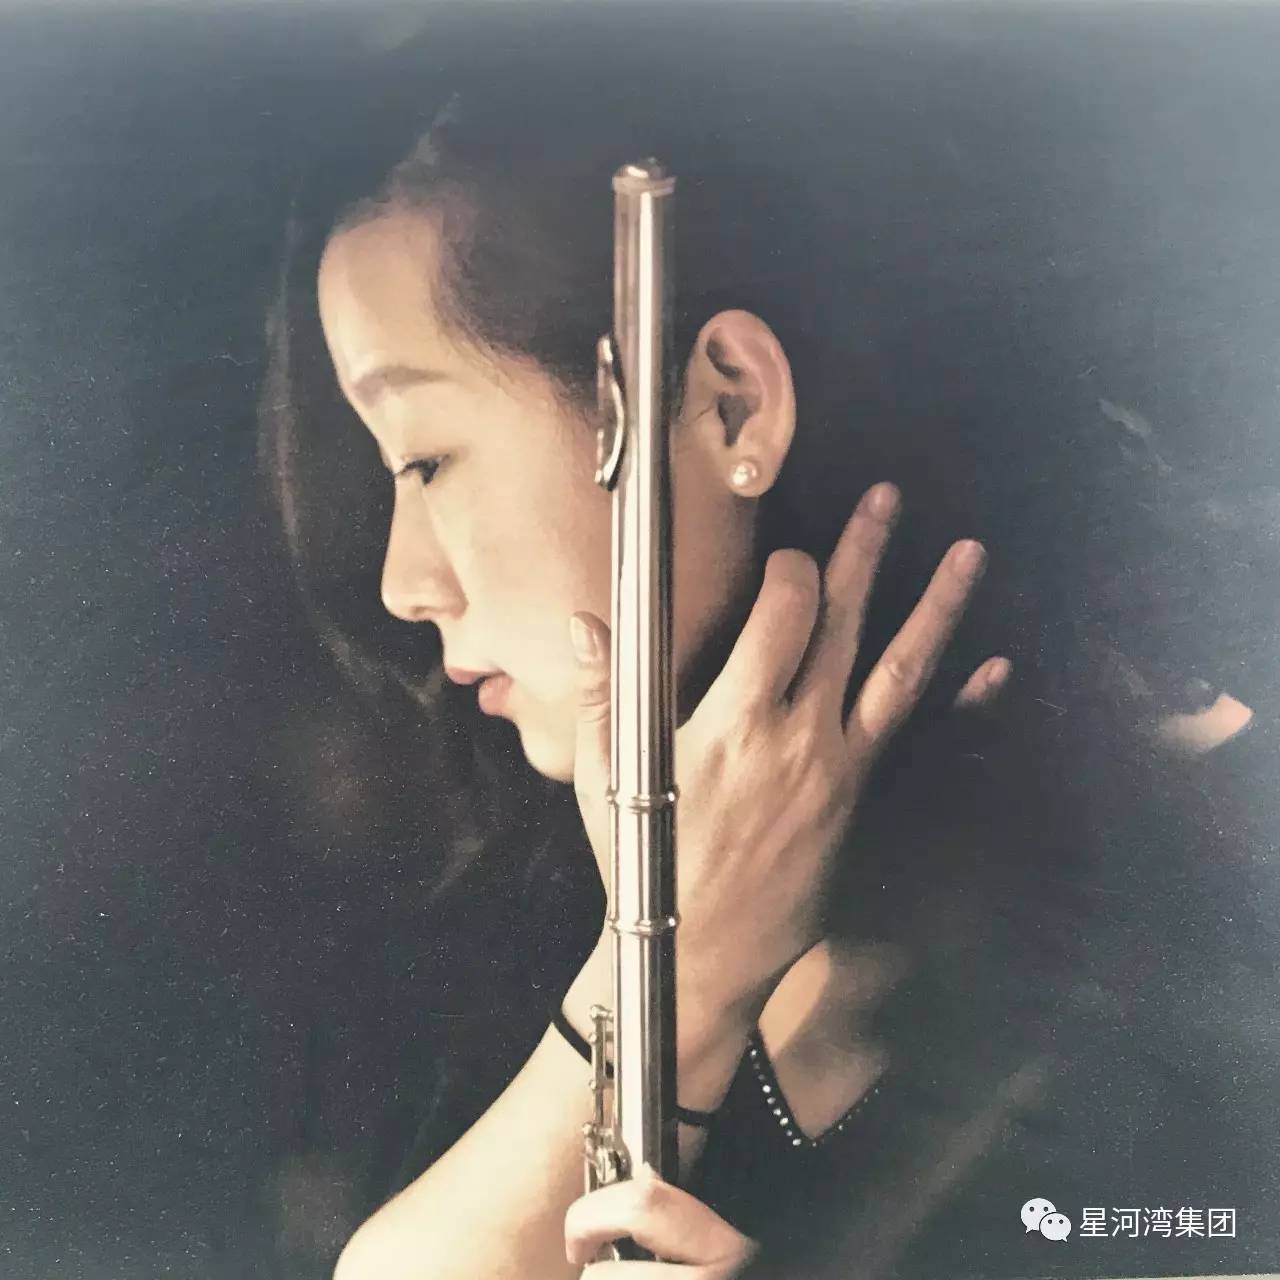 张盛洁国家二级演奏员,2003年进入上海歌剧院交响乐团担任长笛演奏员